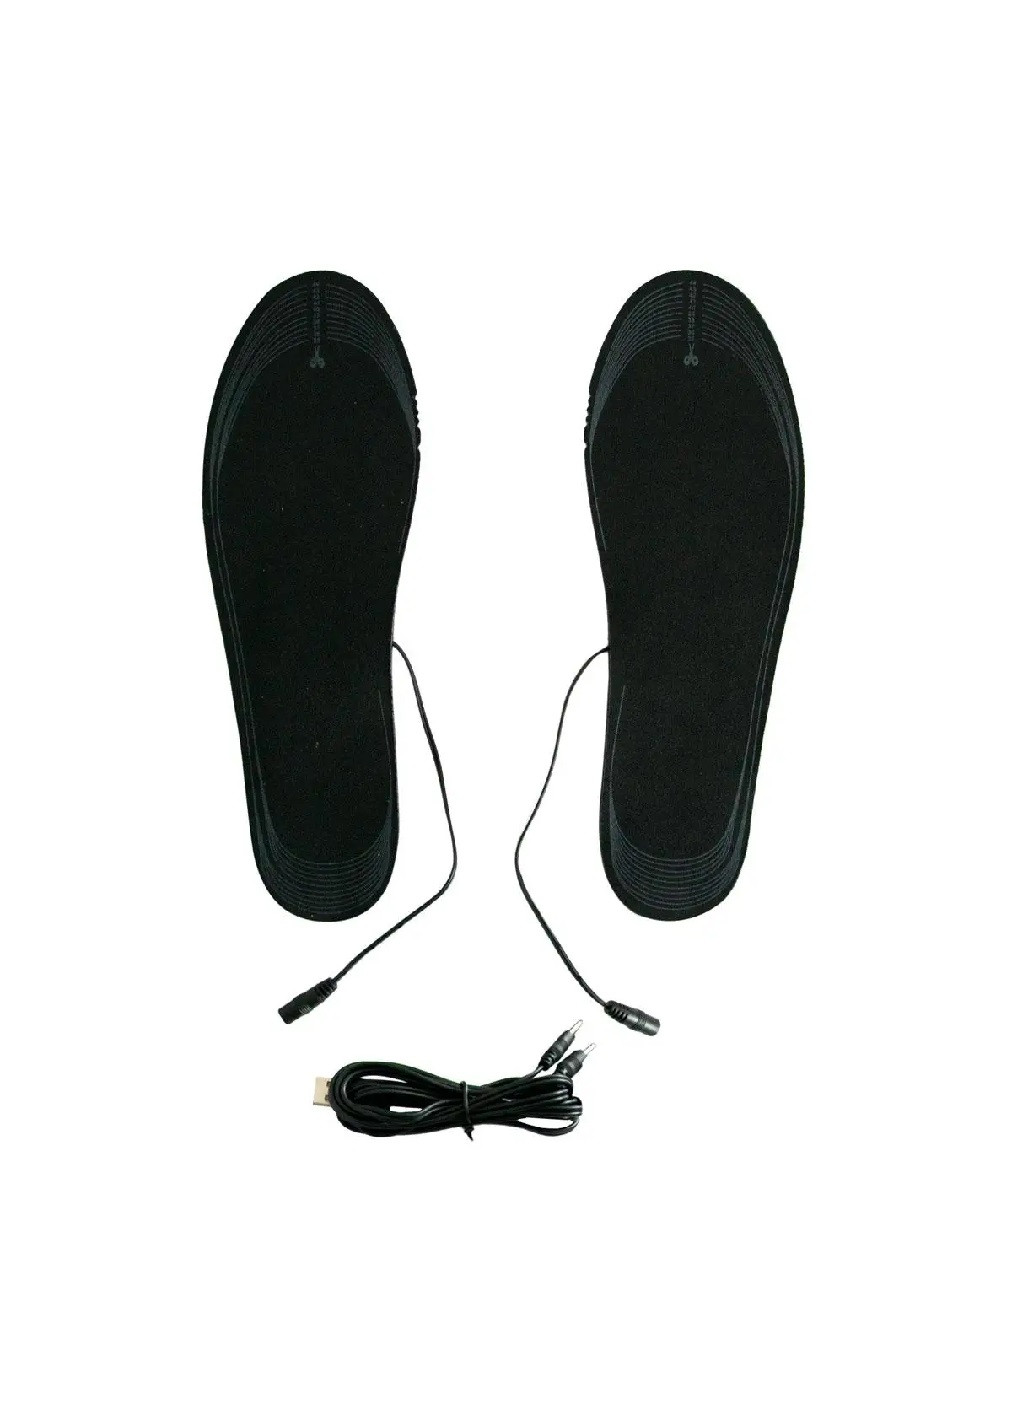 Стельки для обуви зимние с подогревом термостельки теплые универсальные USB 35-44 размер (474131-Prob) Unbranded (257424624)